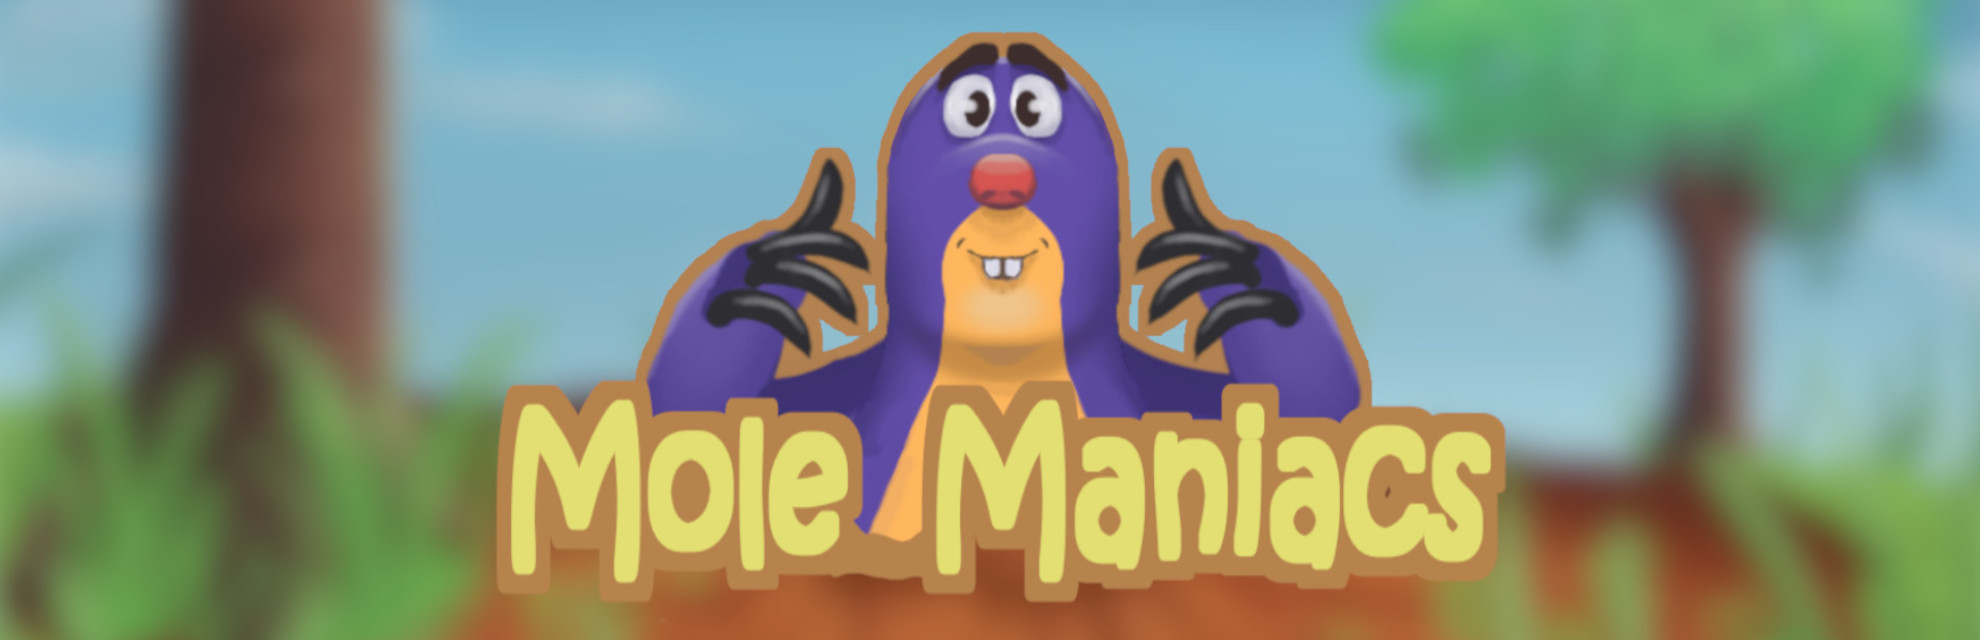 Mole Maniacs